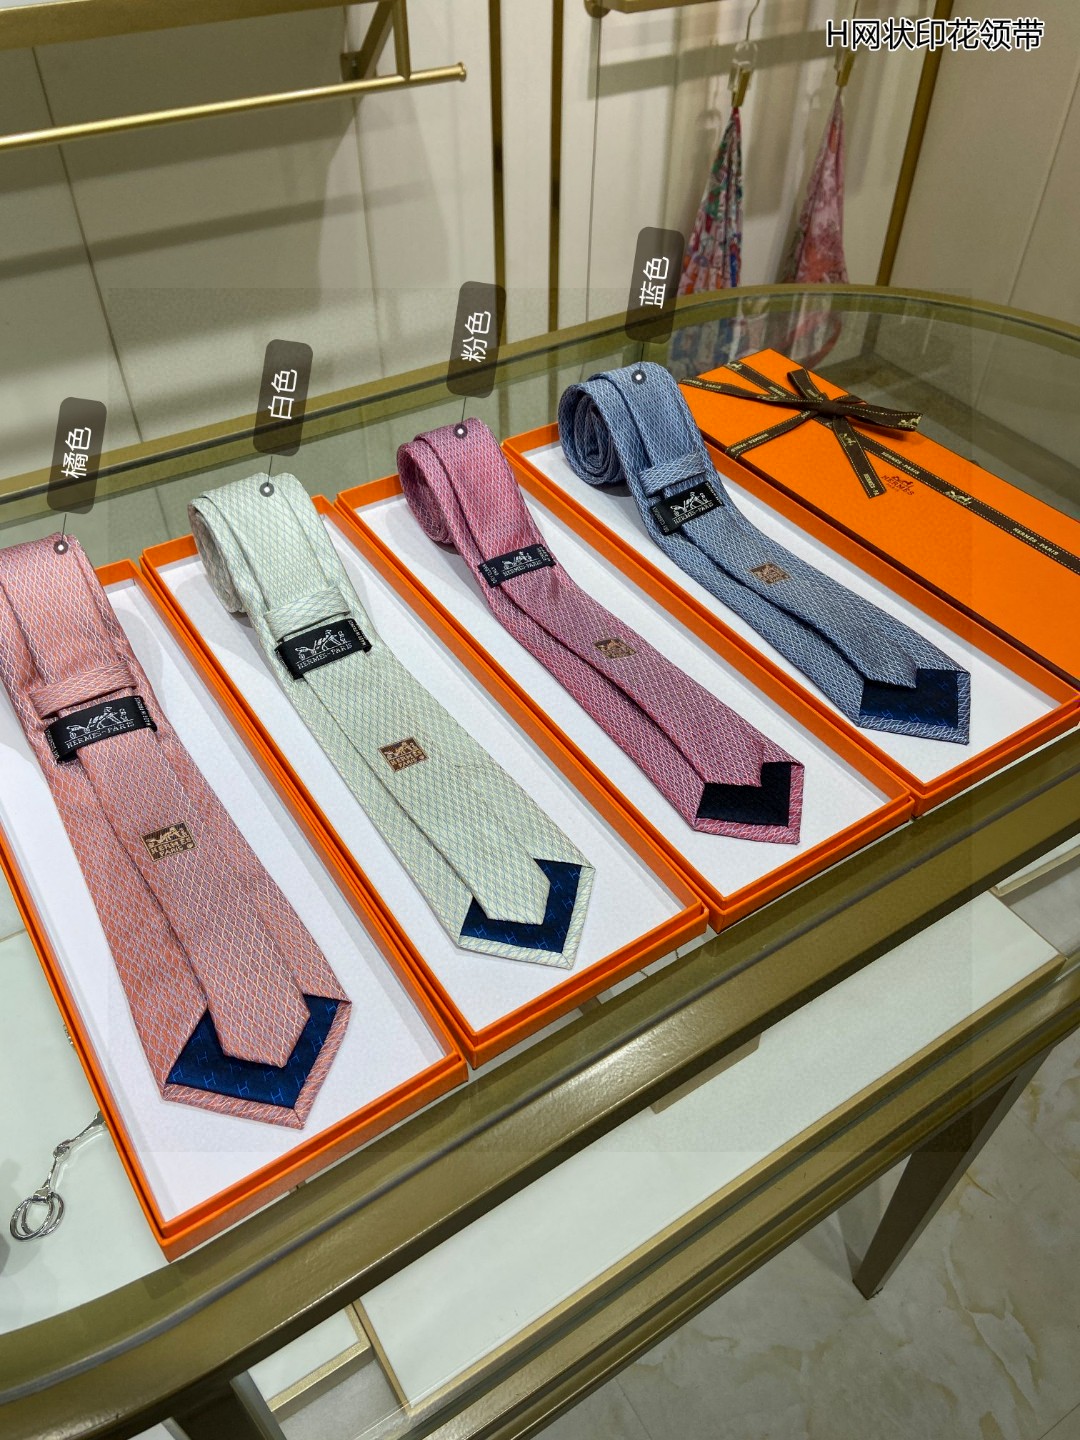 特价男士新款领带系列H网状印花领带稀有H家每年都有一千条不同印花的领带面世从最初的多以几何图案表现骑术活